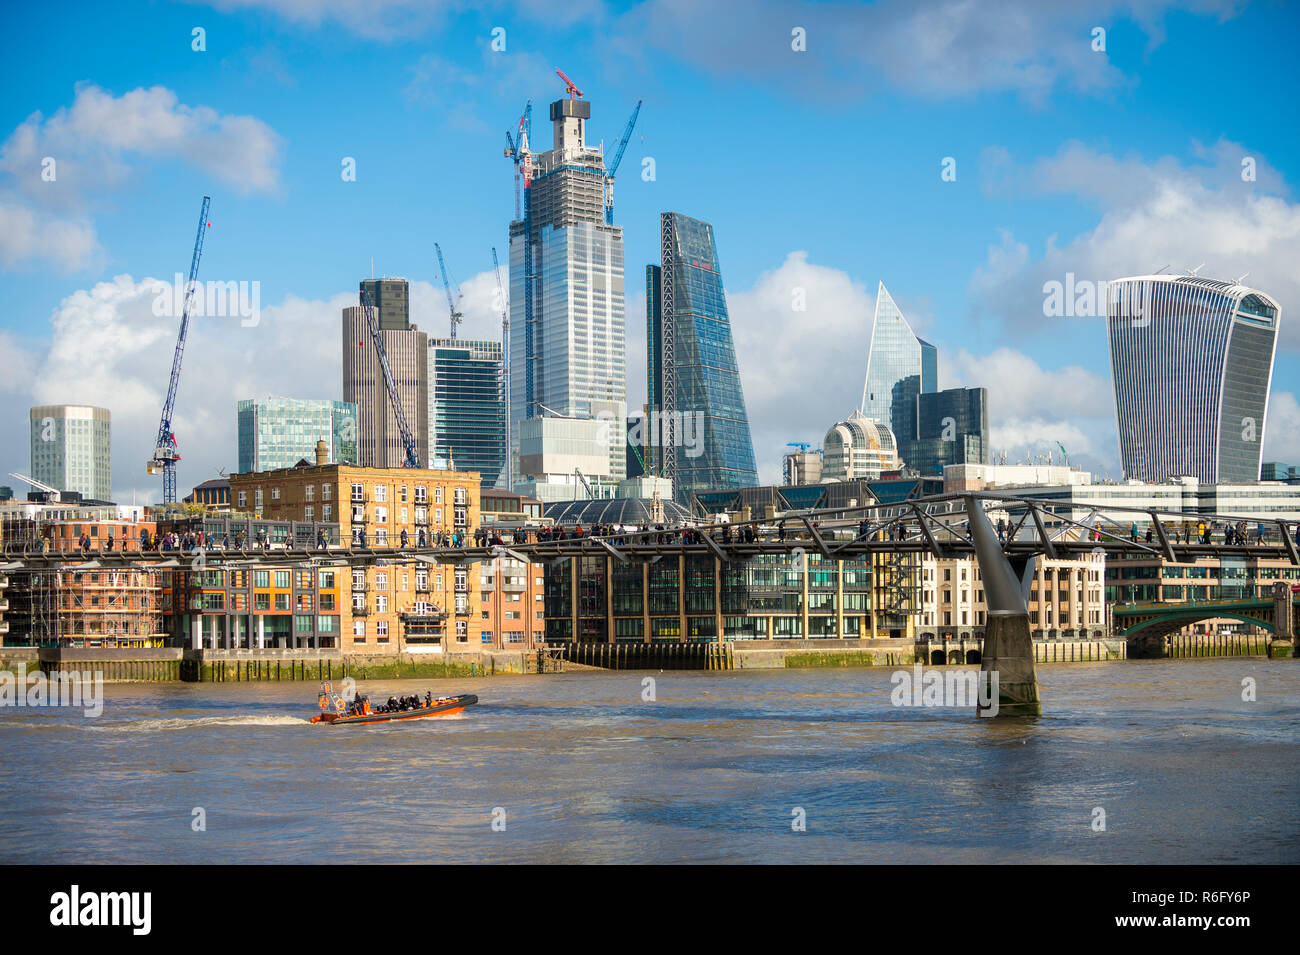 Vue panoramique lumineux après-midi de la ville de Londres moderne des gratte-ciel en construction dans le quartier financier de la ville de la rivière Thames Banque D'Images